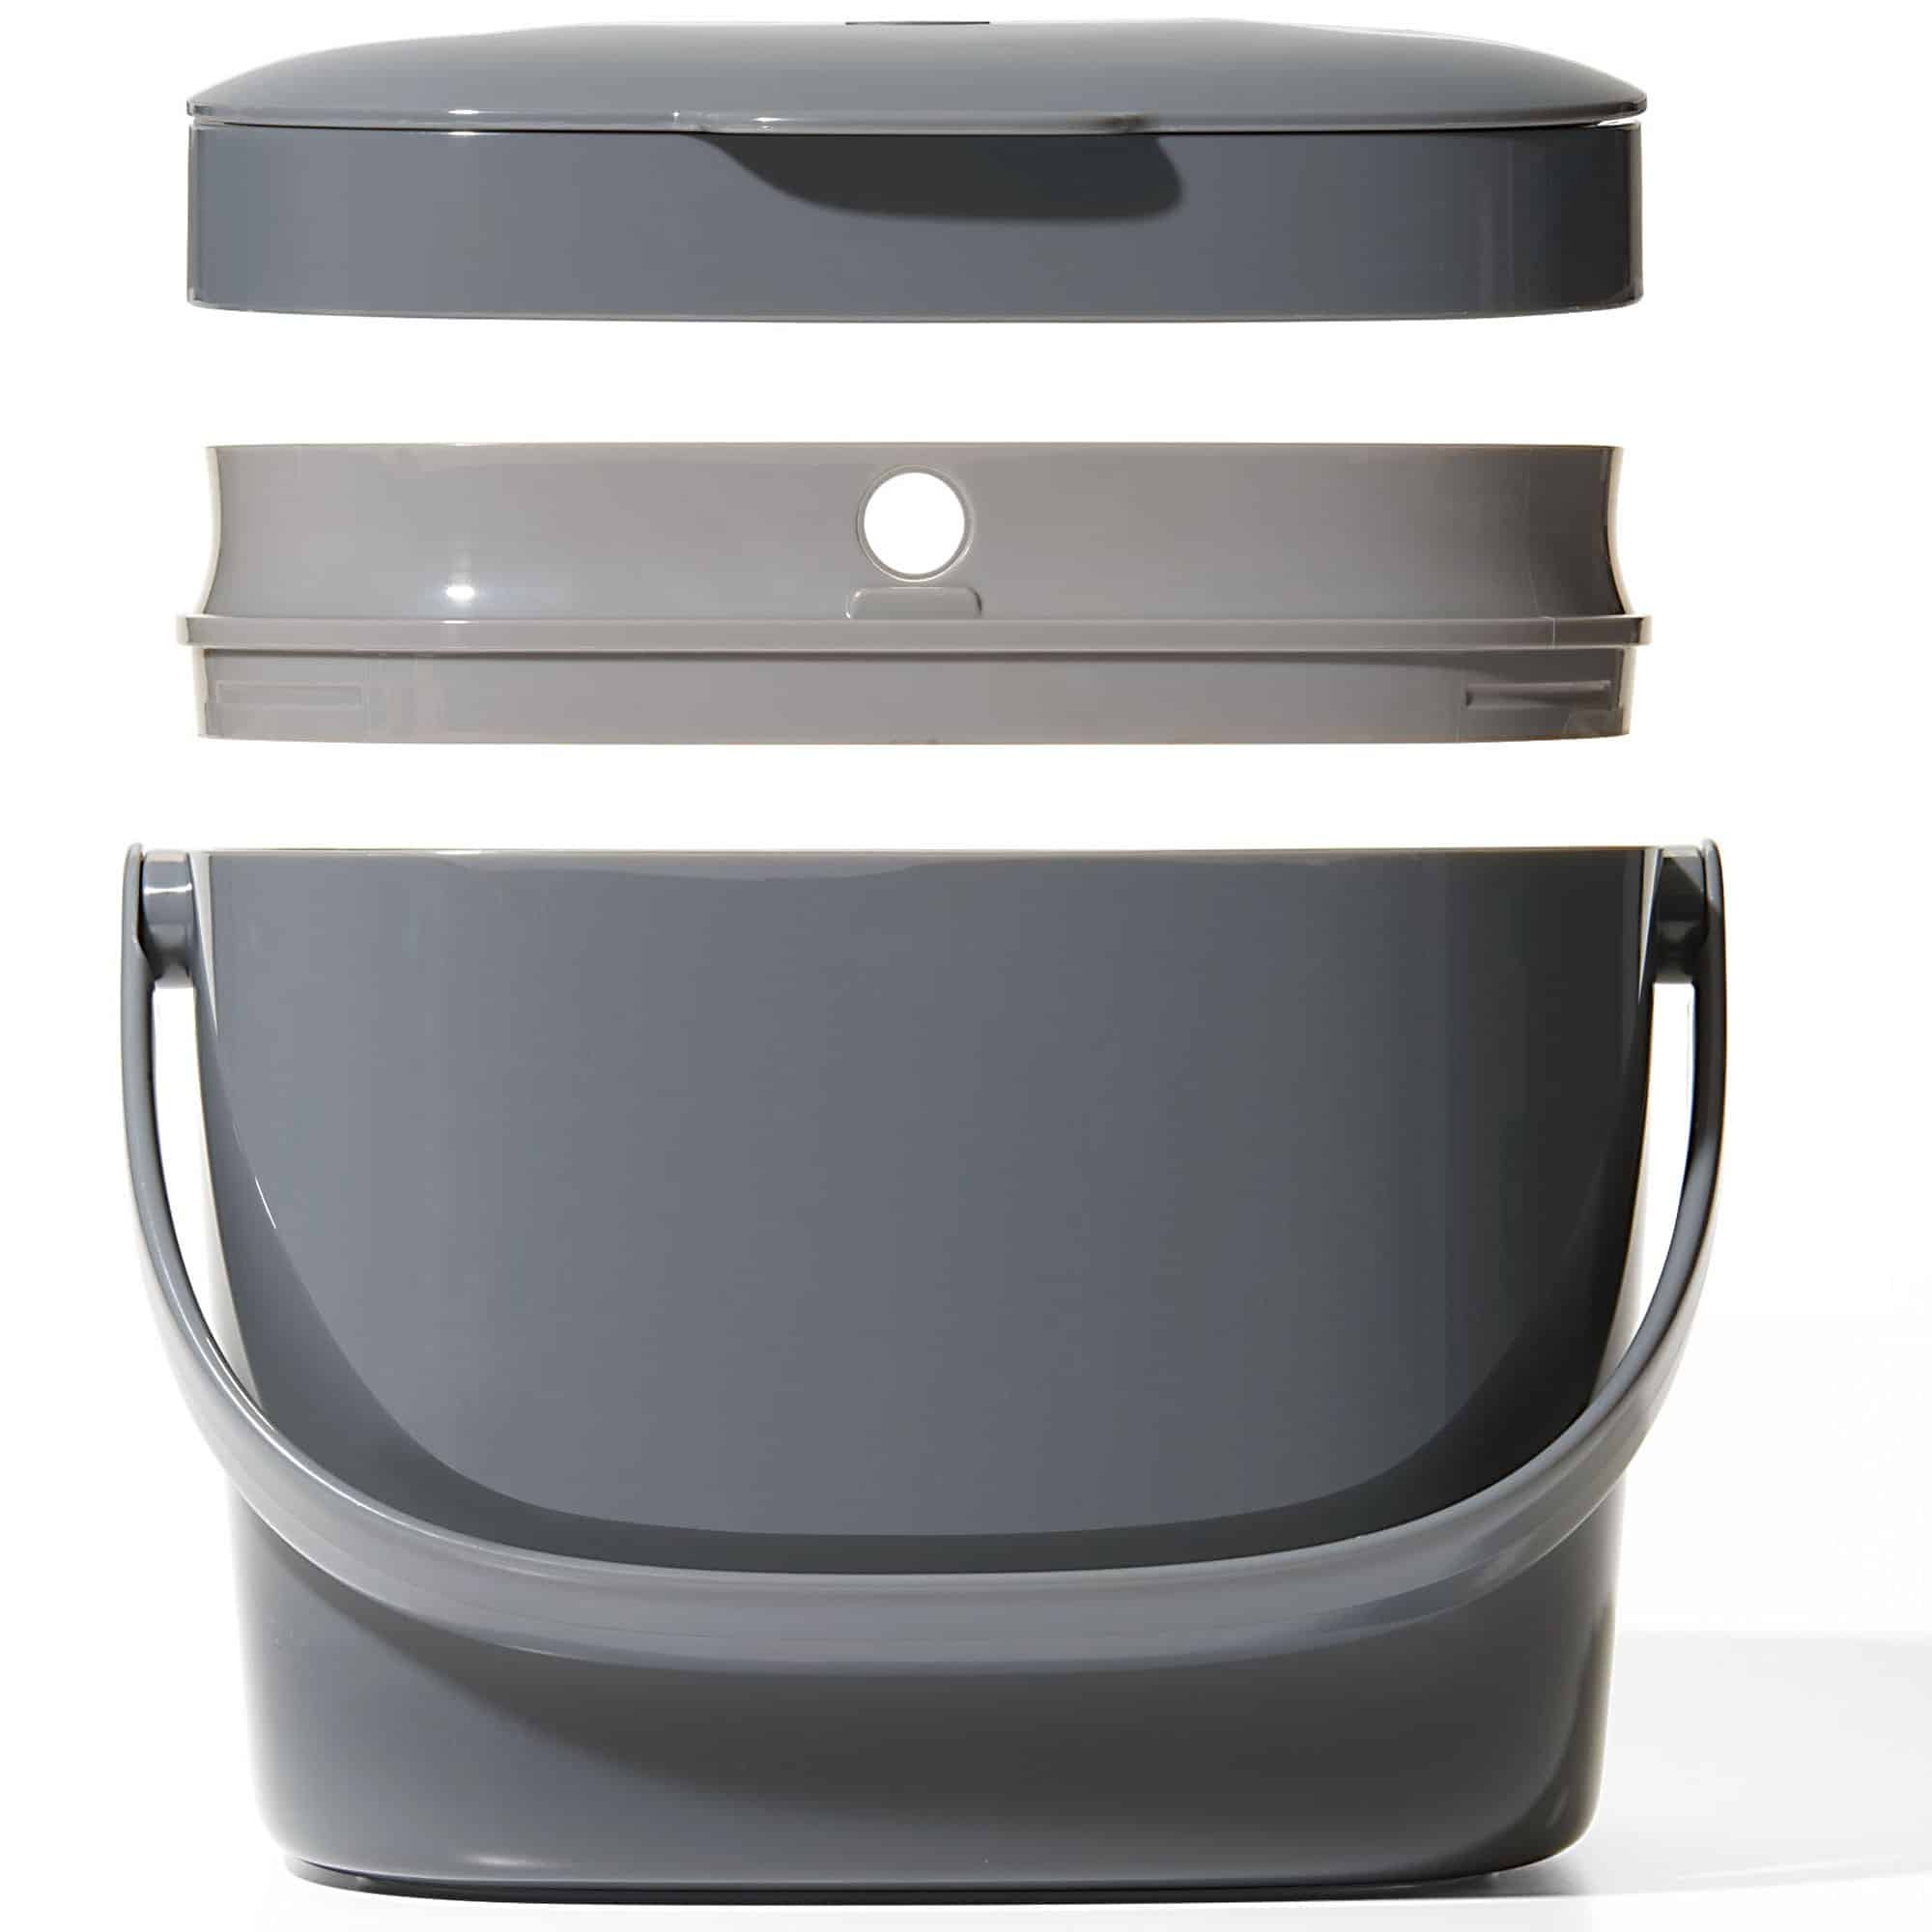 OXO Easy-Clean kompostbeholder 6,6 l, Charcoalbedste i test blender